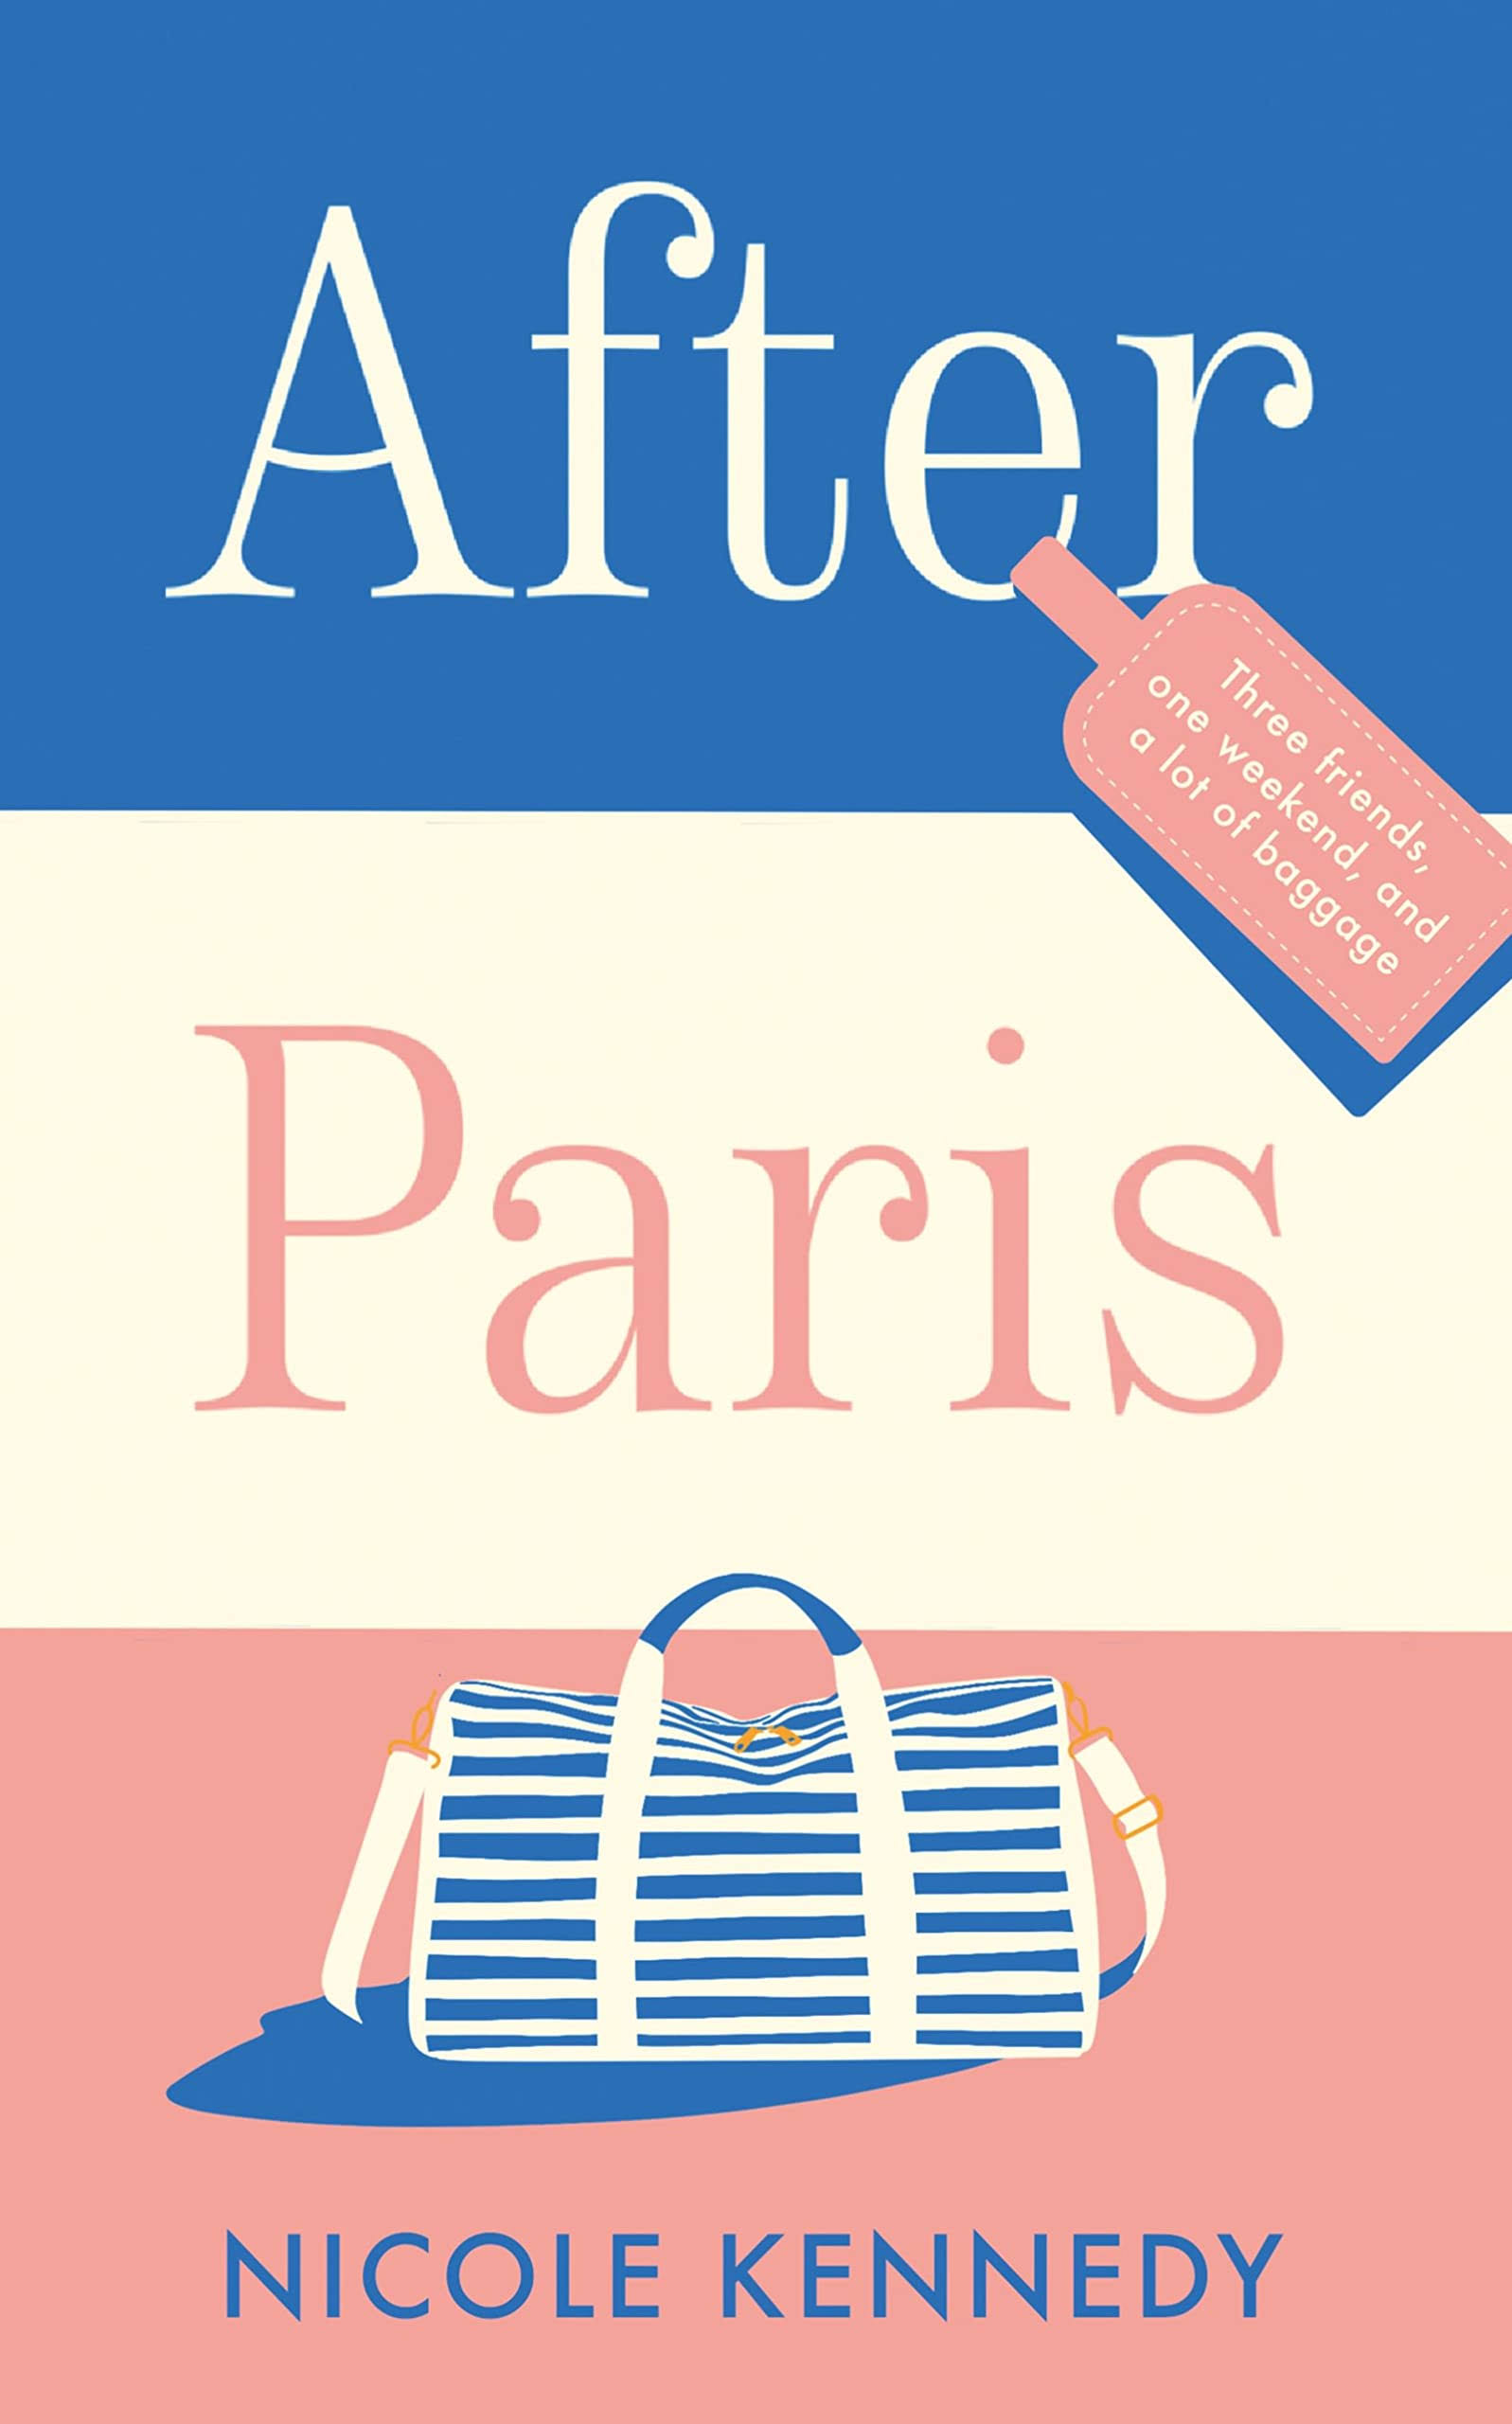 After Paris [Book]